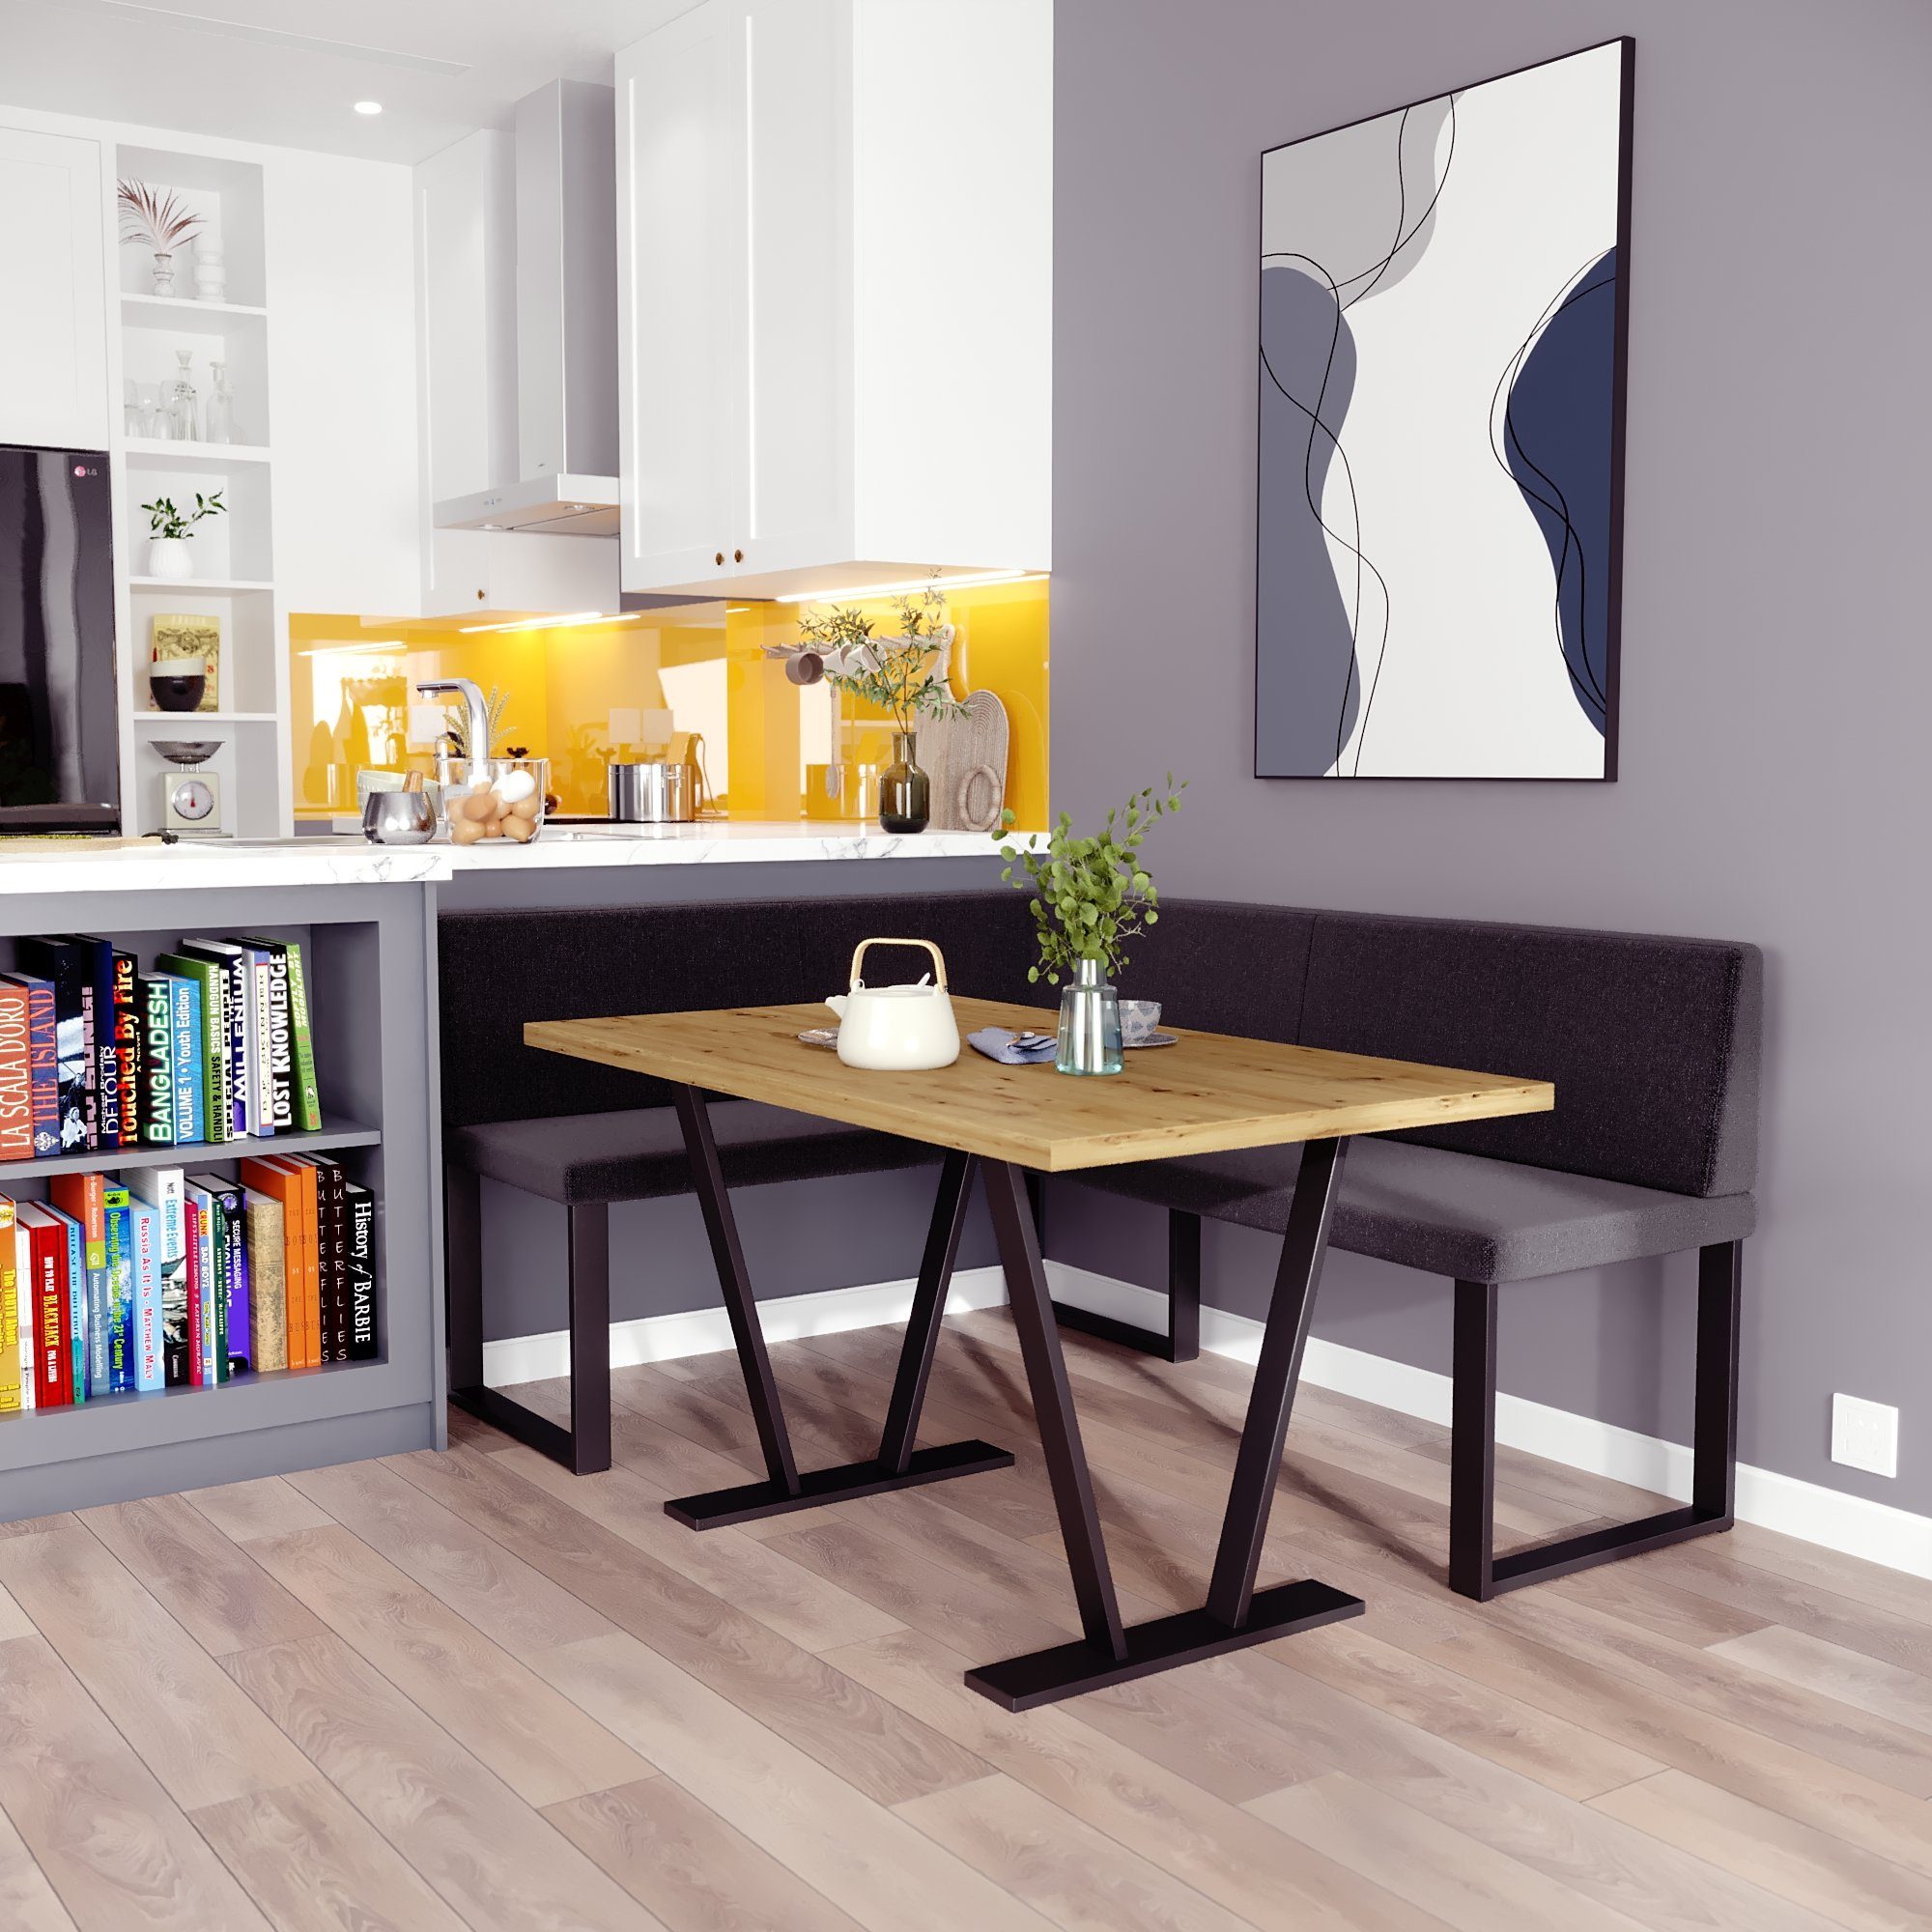 sofa4you Eckbankgruppe Alina Metall mit Tisch, Moderne Sitzecke perfekt für Ihr Esszimmer, Küche (128x168/142x196) schwarz